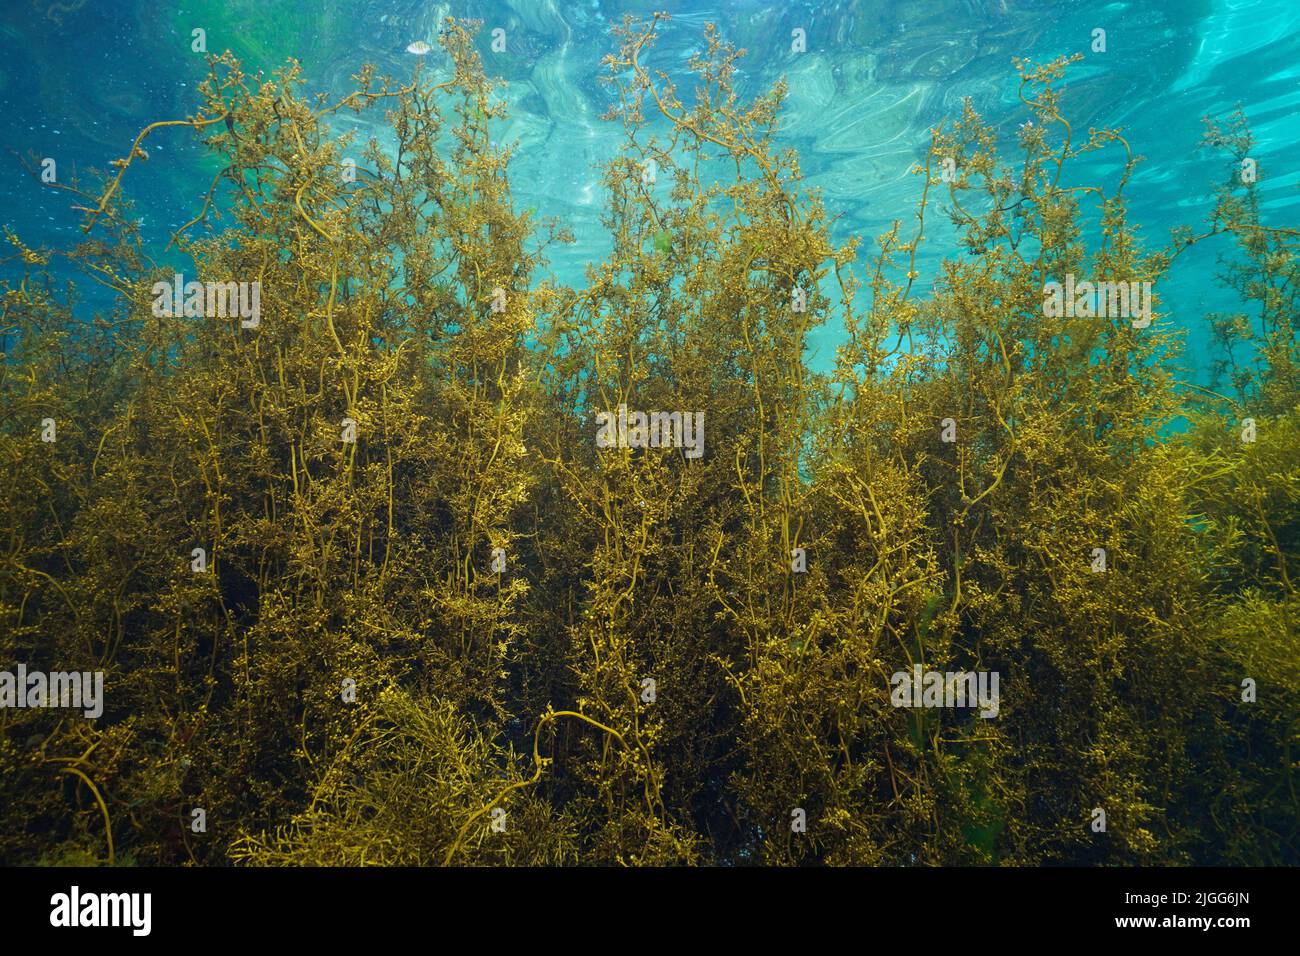 Algue de wireaded japonaise, Sargassum muticum algue brune, sous l'océan Atlantique, Espagne, Galice Banque D'Images